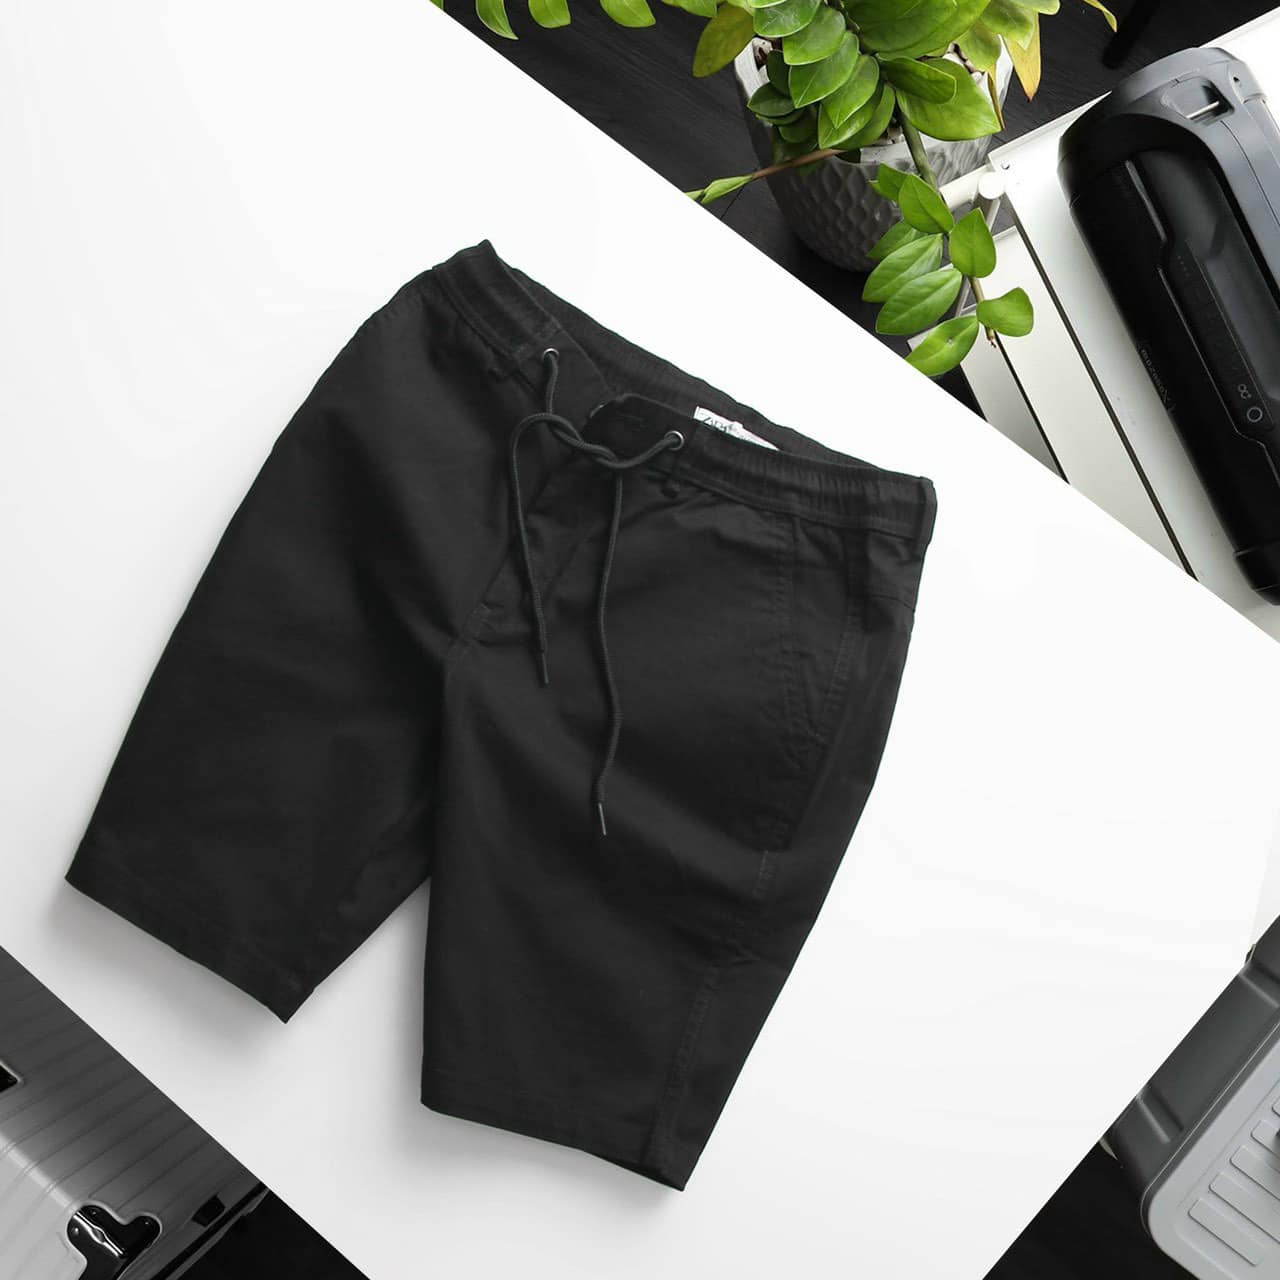 Quần short nam Linen màu đen hiện đại, sang trọng chuẩn VNXK